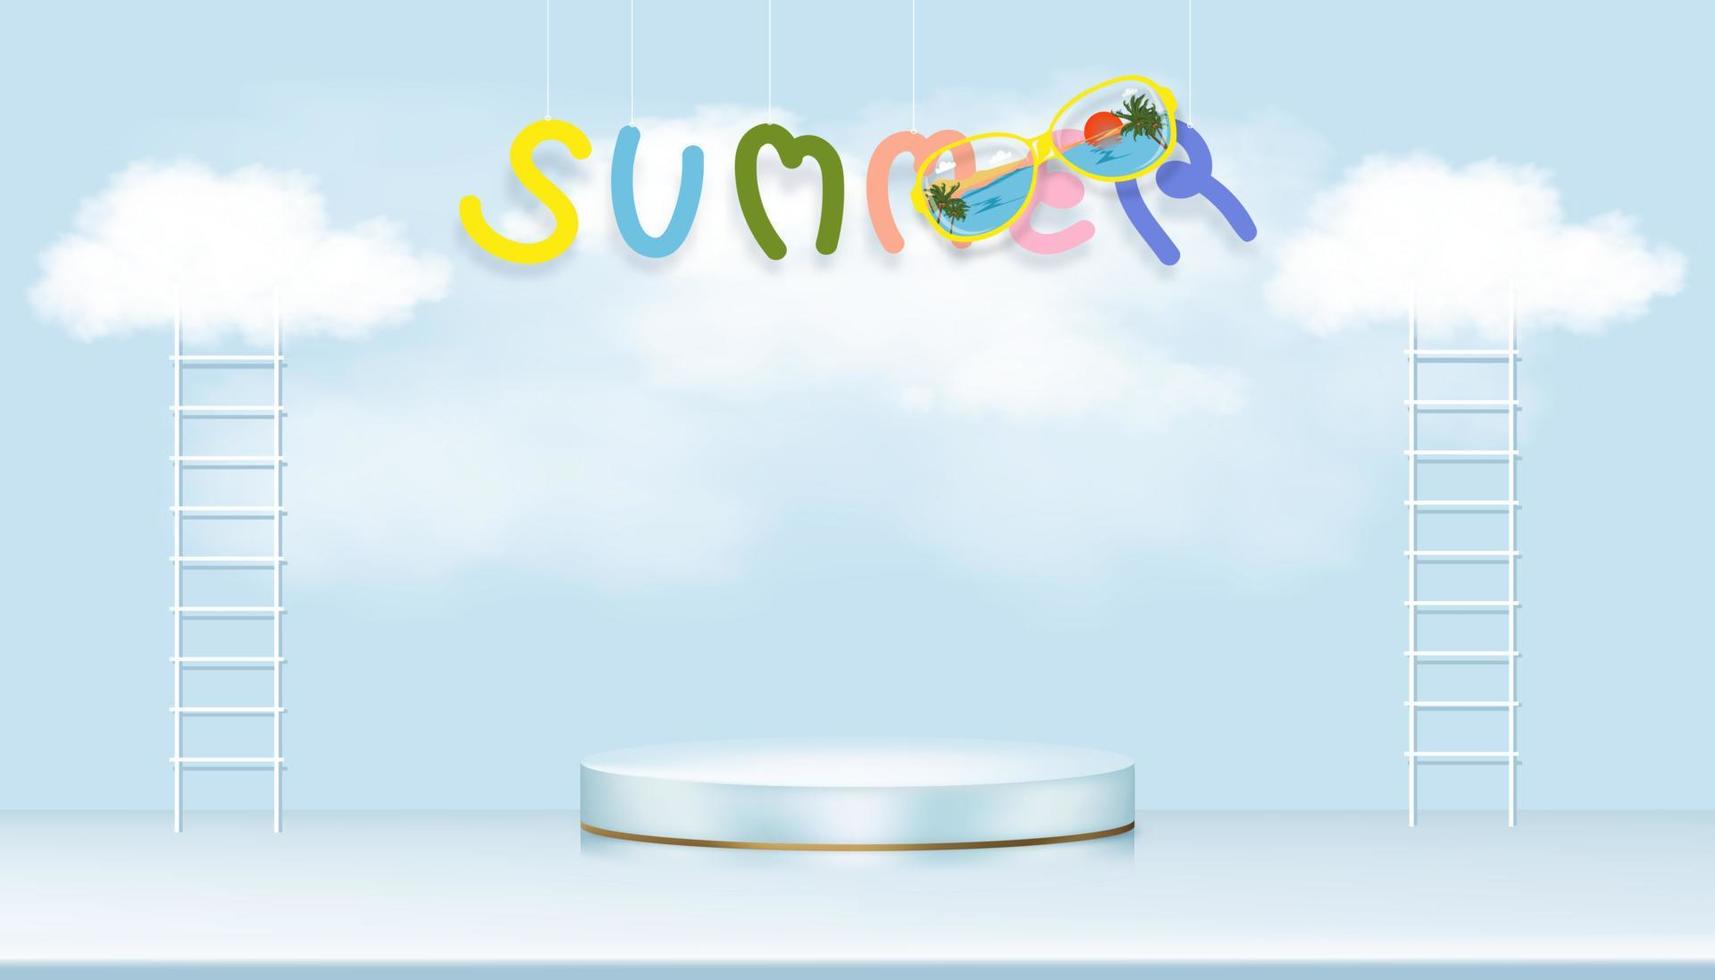 sala de estudio con podio y escalera con una nube esponjosa flotando en el fondo del cielo azul, ilustración vectorial diseño mínimo de fondo 3d con maqueta de escaparate para la presentación de vacaciones de verano vector